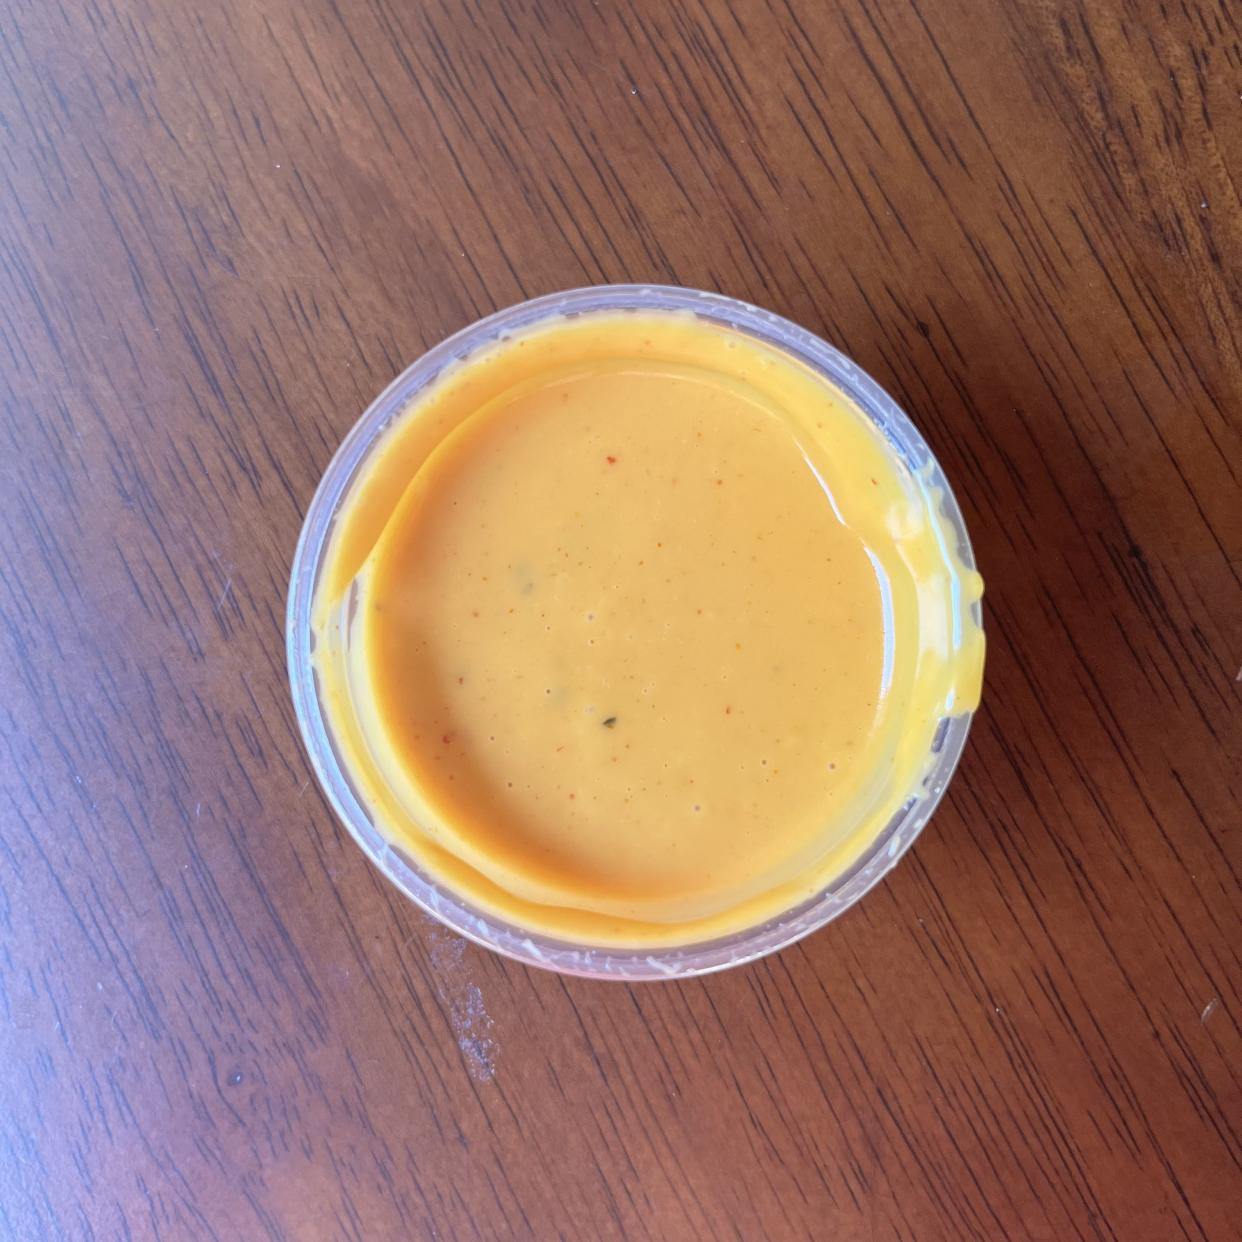 Zaxby's Hot Honey Mustard sauce